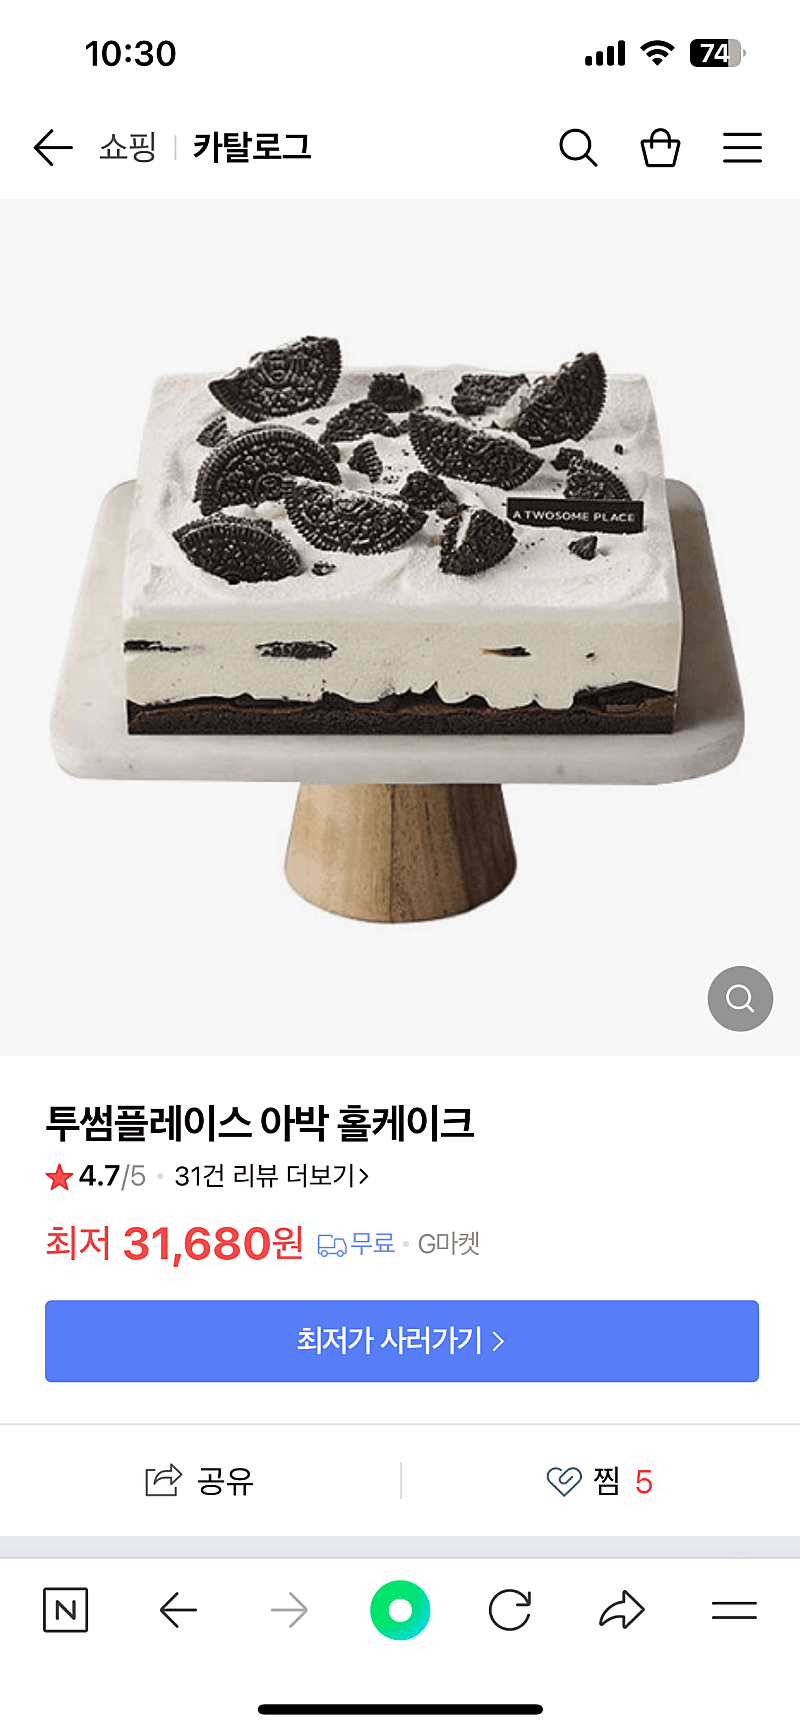 투썸플레이스 아박 홀케이크